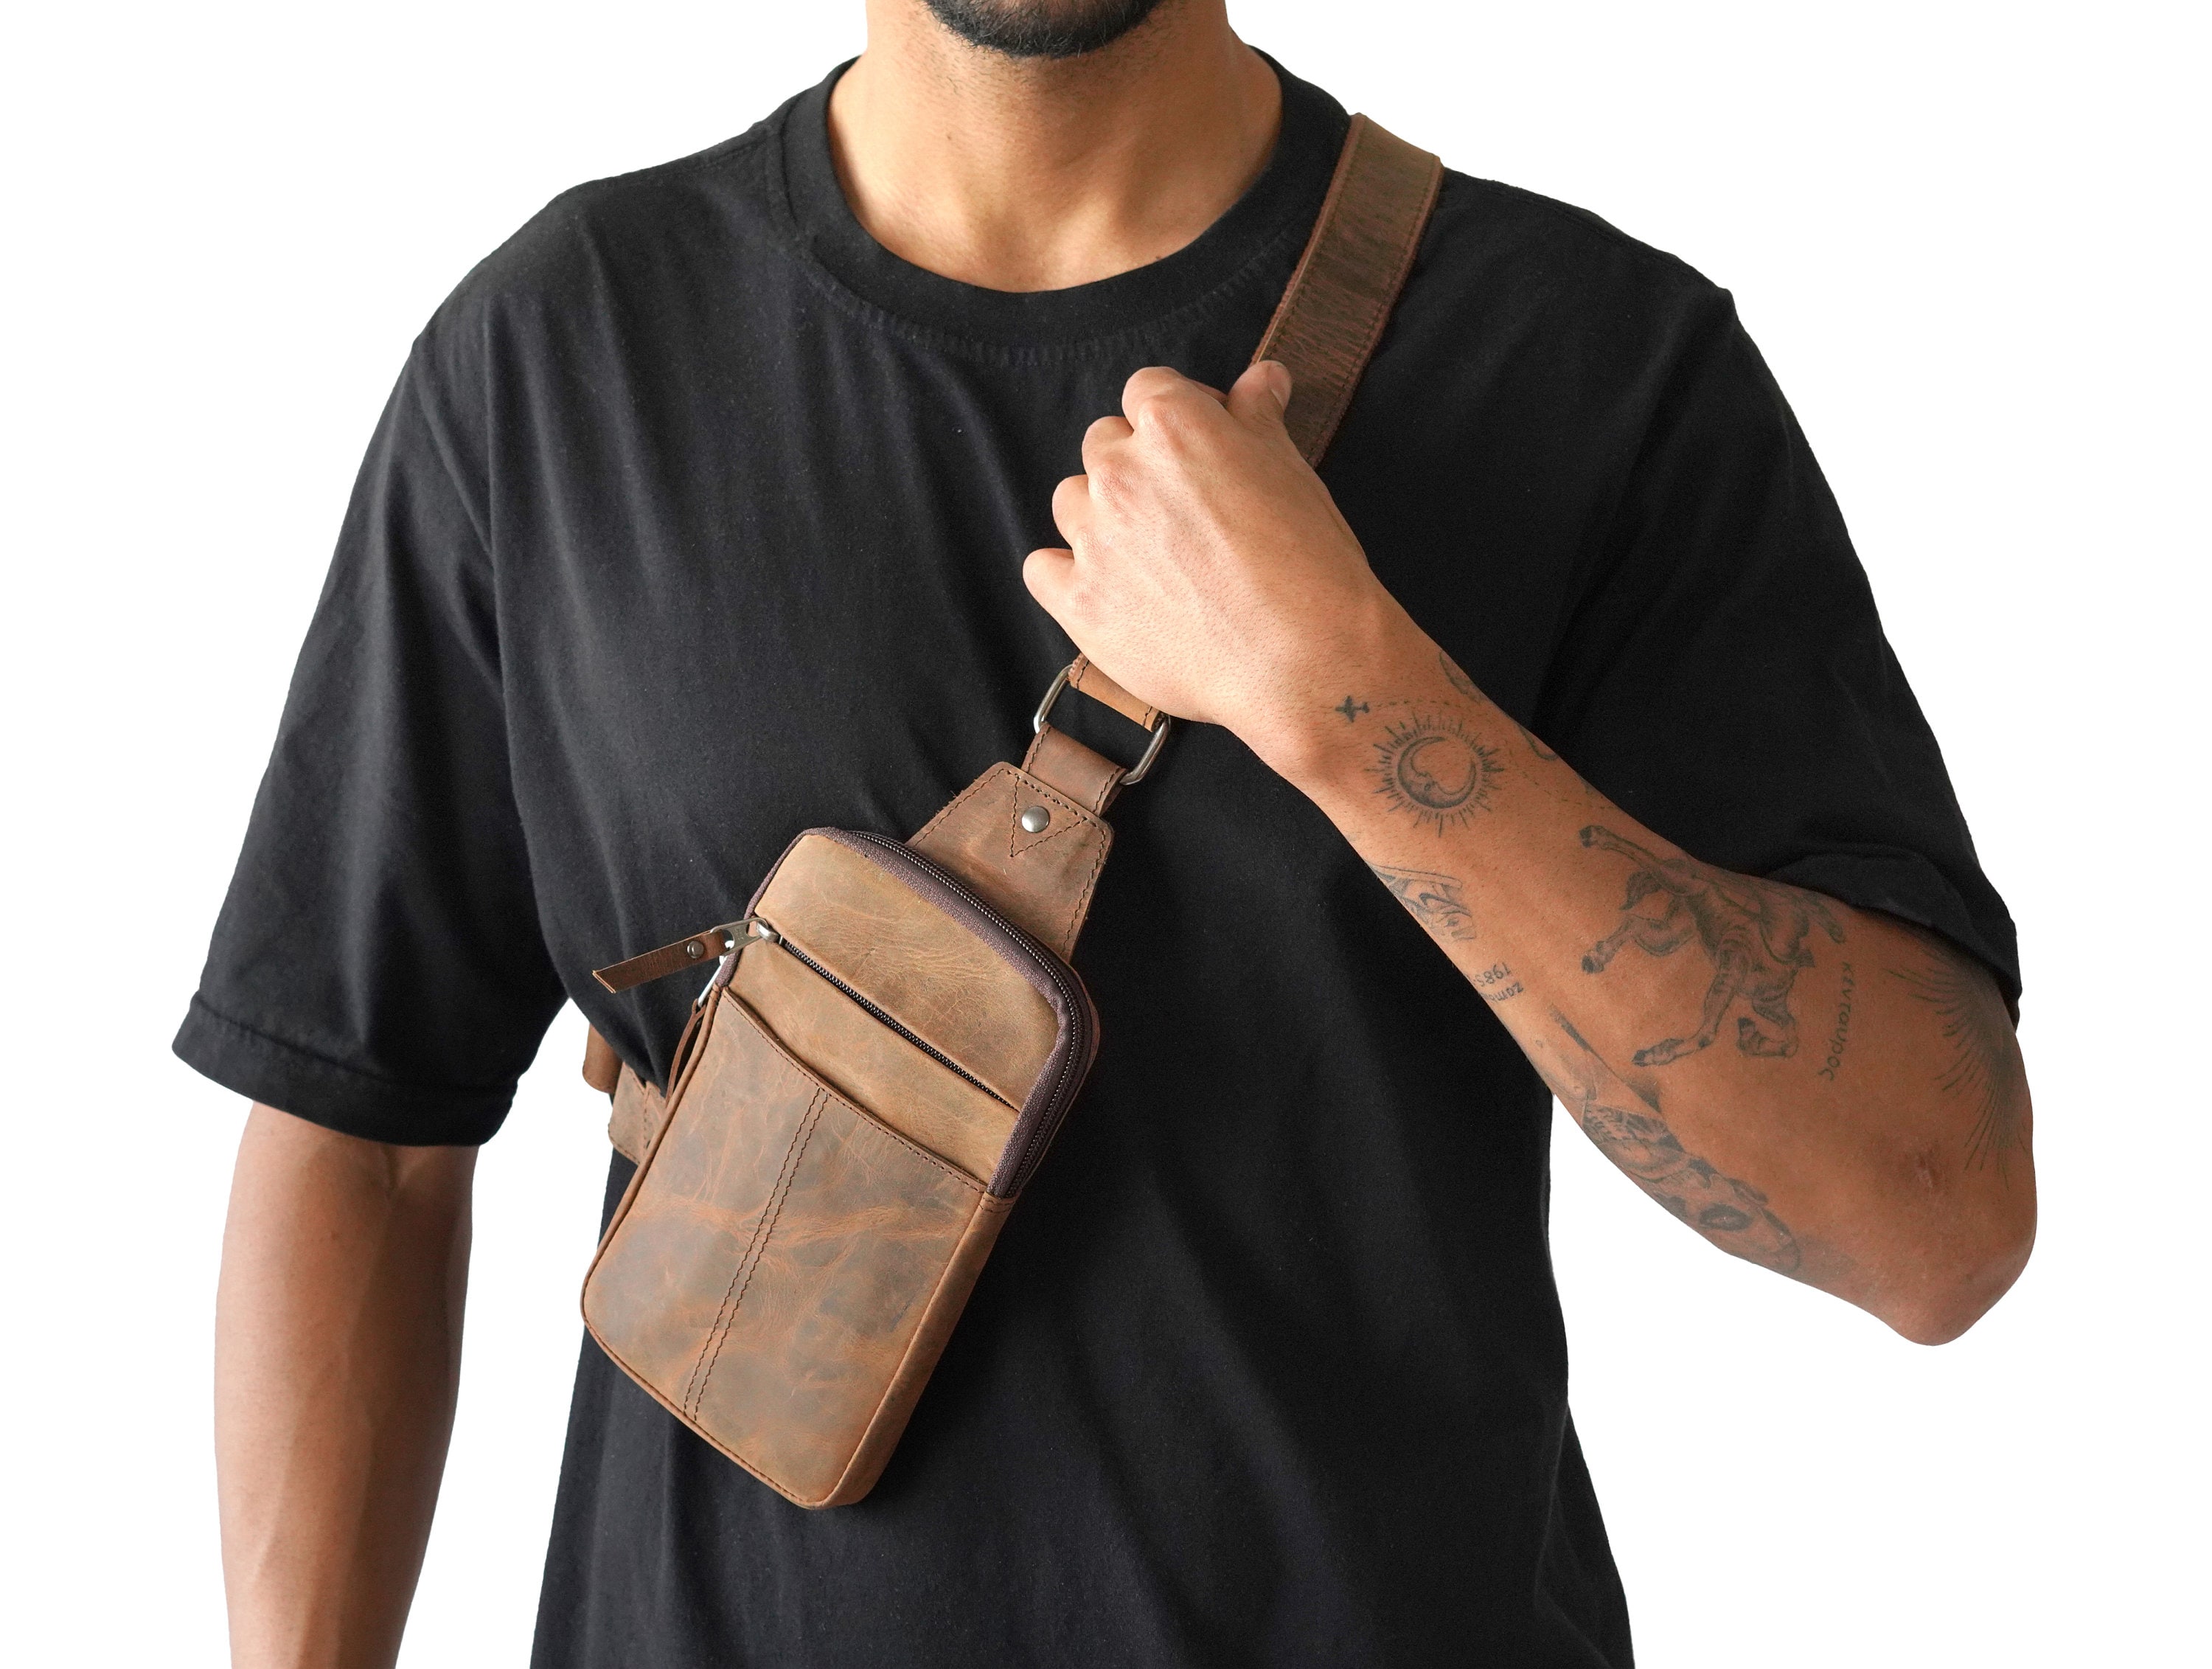 Men Women Chest Bag Genuine Leather Sling Shoulder Backpack, Waterproof Crossbody  Bag By Rustic Town (Brown)